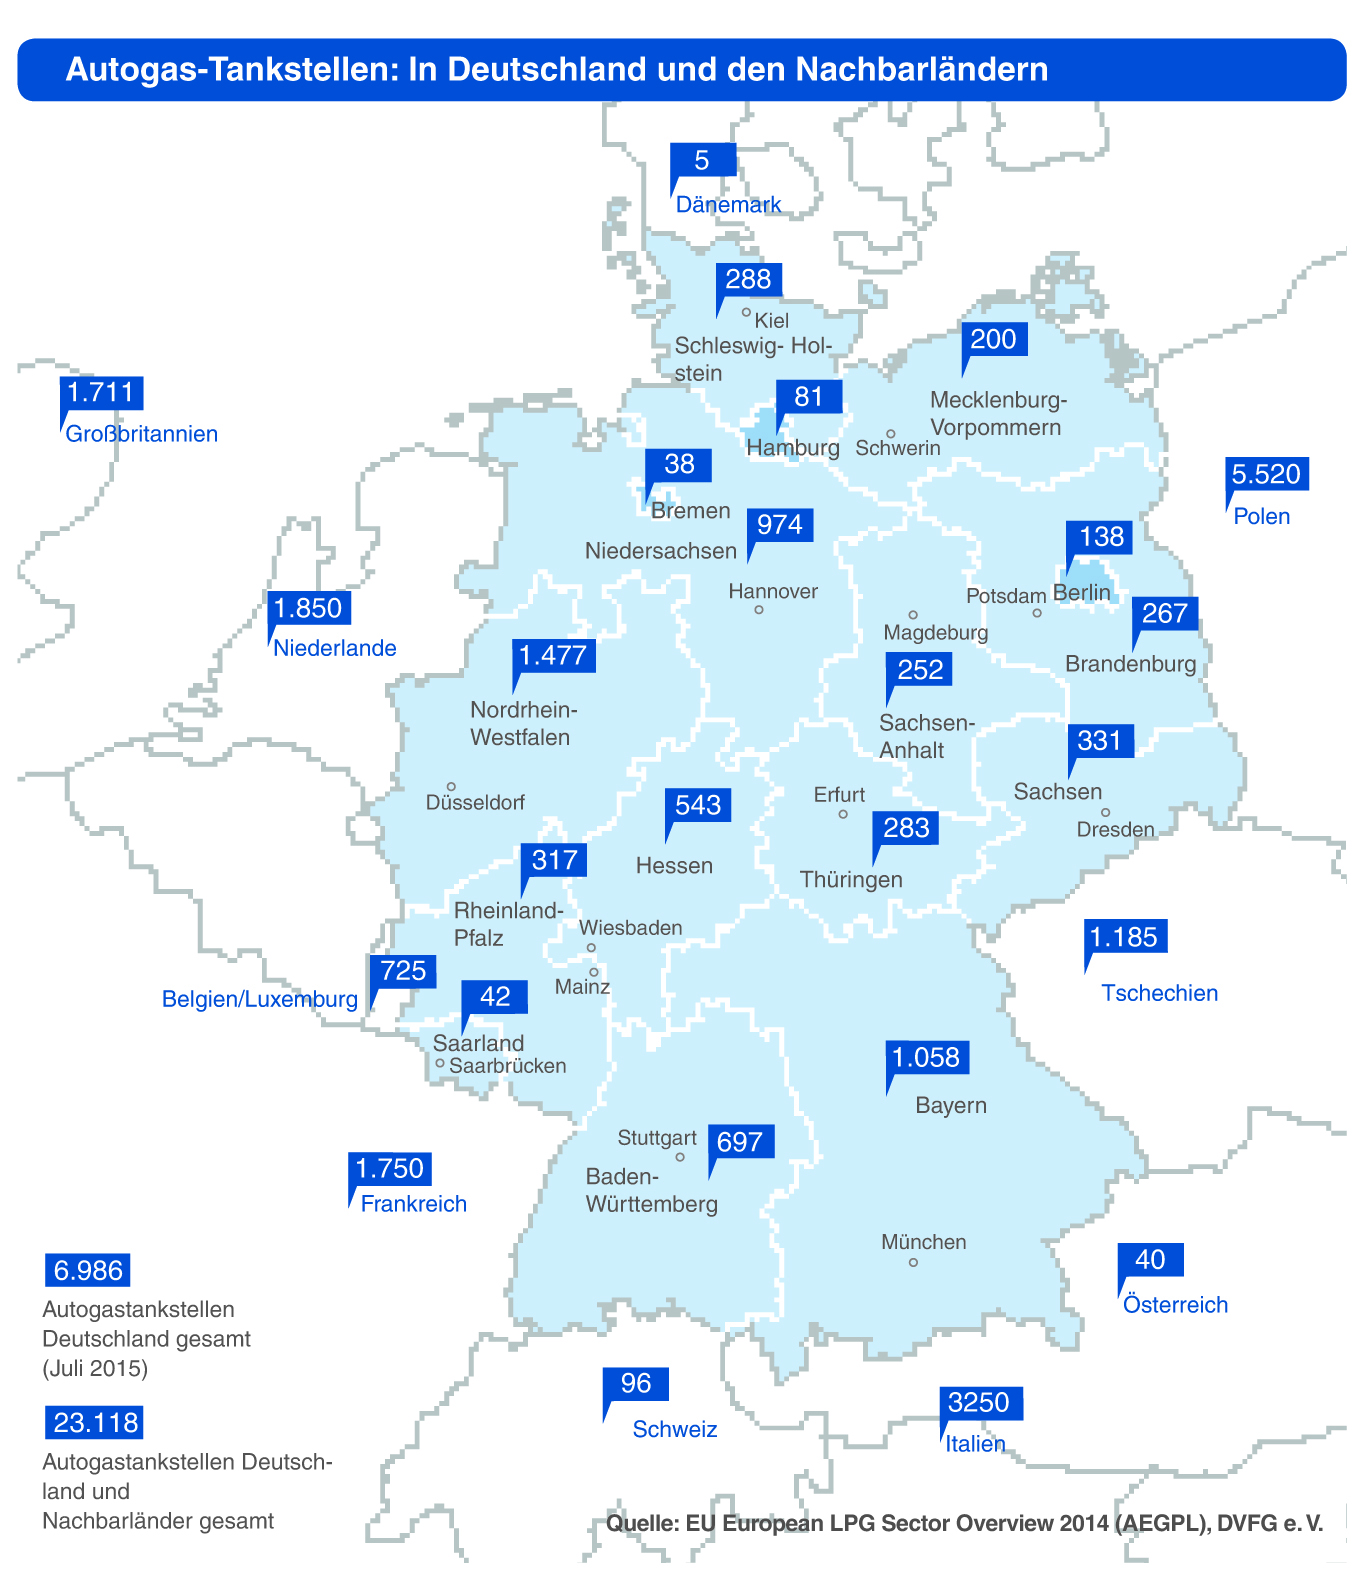 In einer Deutschlandkarte sind alle Autogastankstellen eingezeichnet.